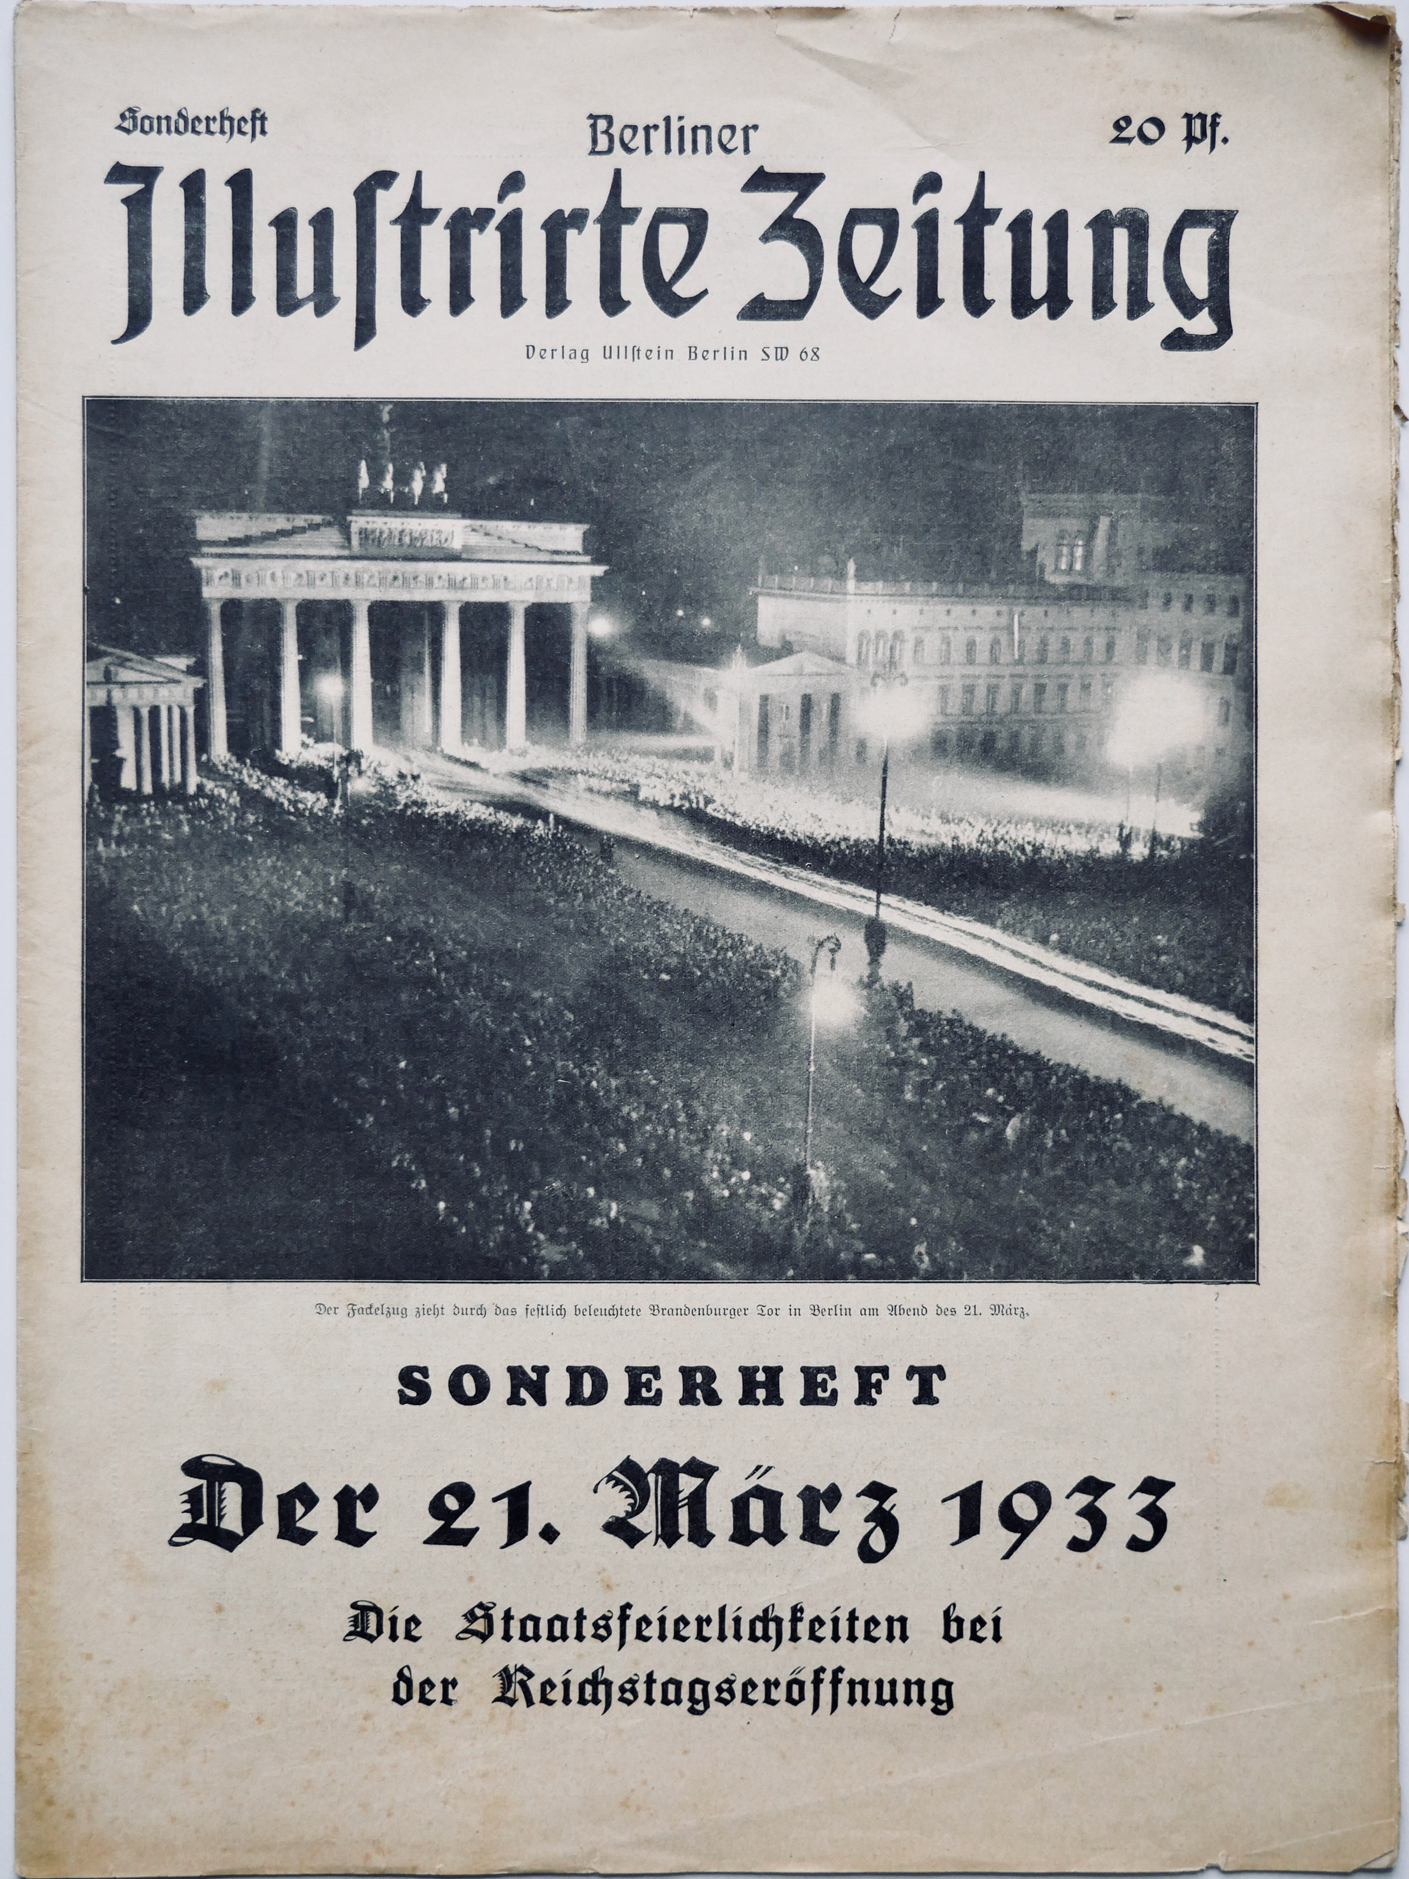 Die Titelseite der „Berliner Illustrirte Zeitung“ mit einem Bild vom Brandenburger Tor in Berlin